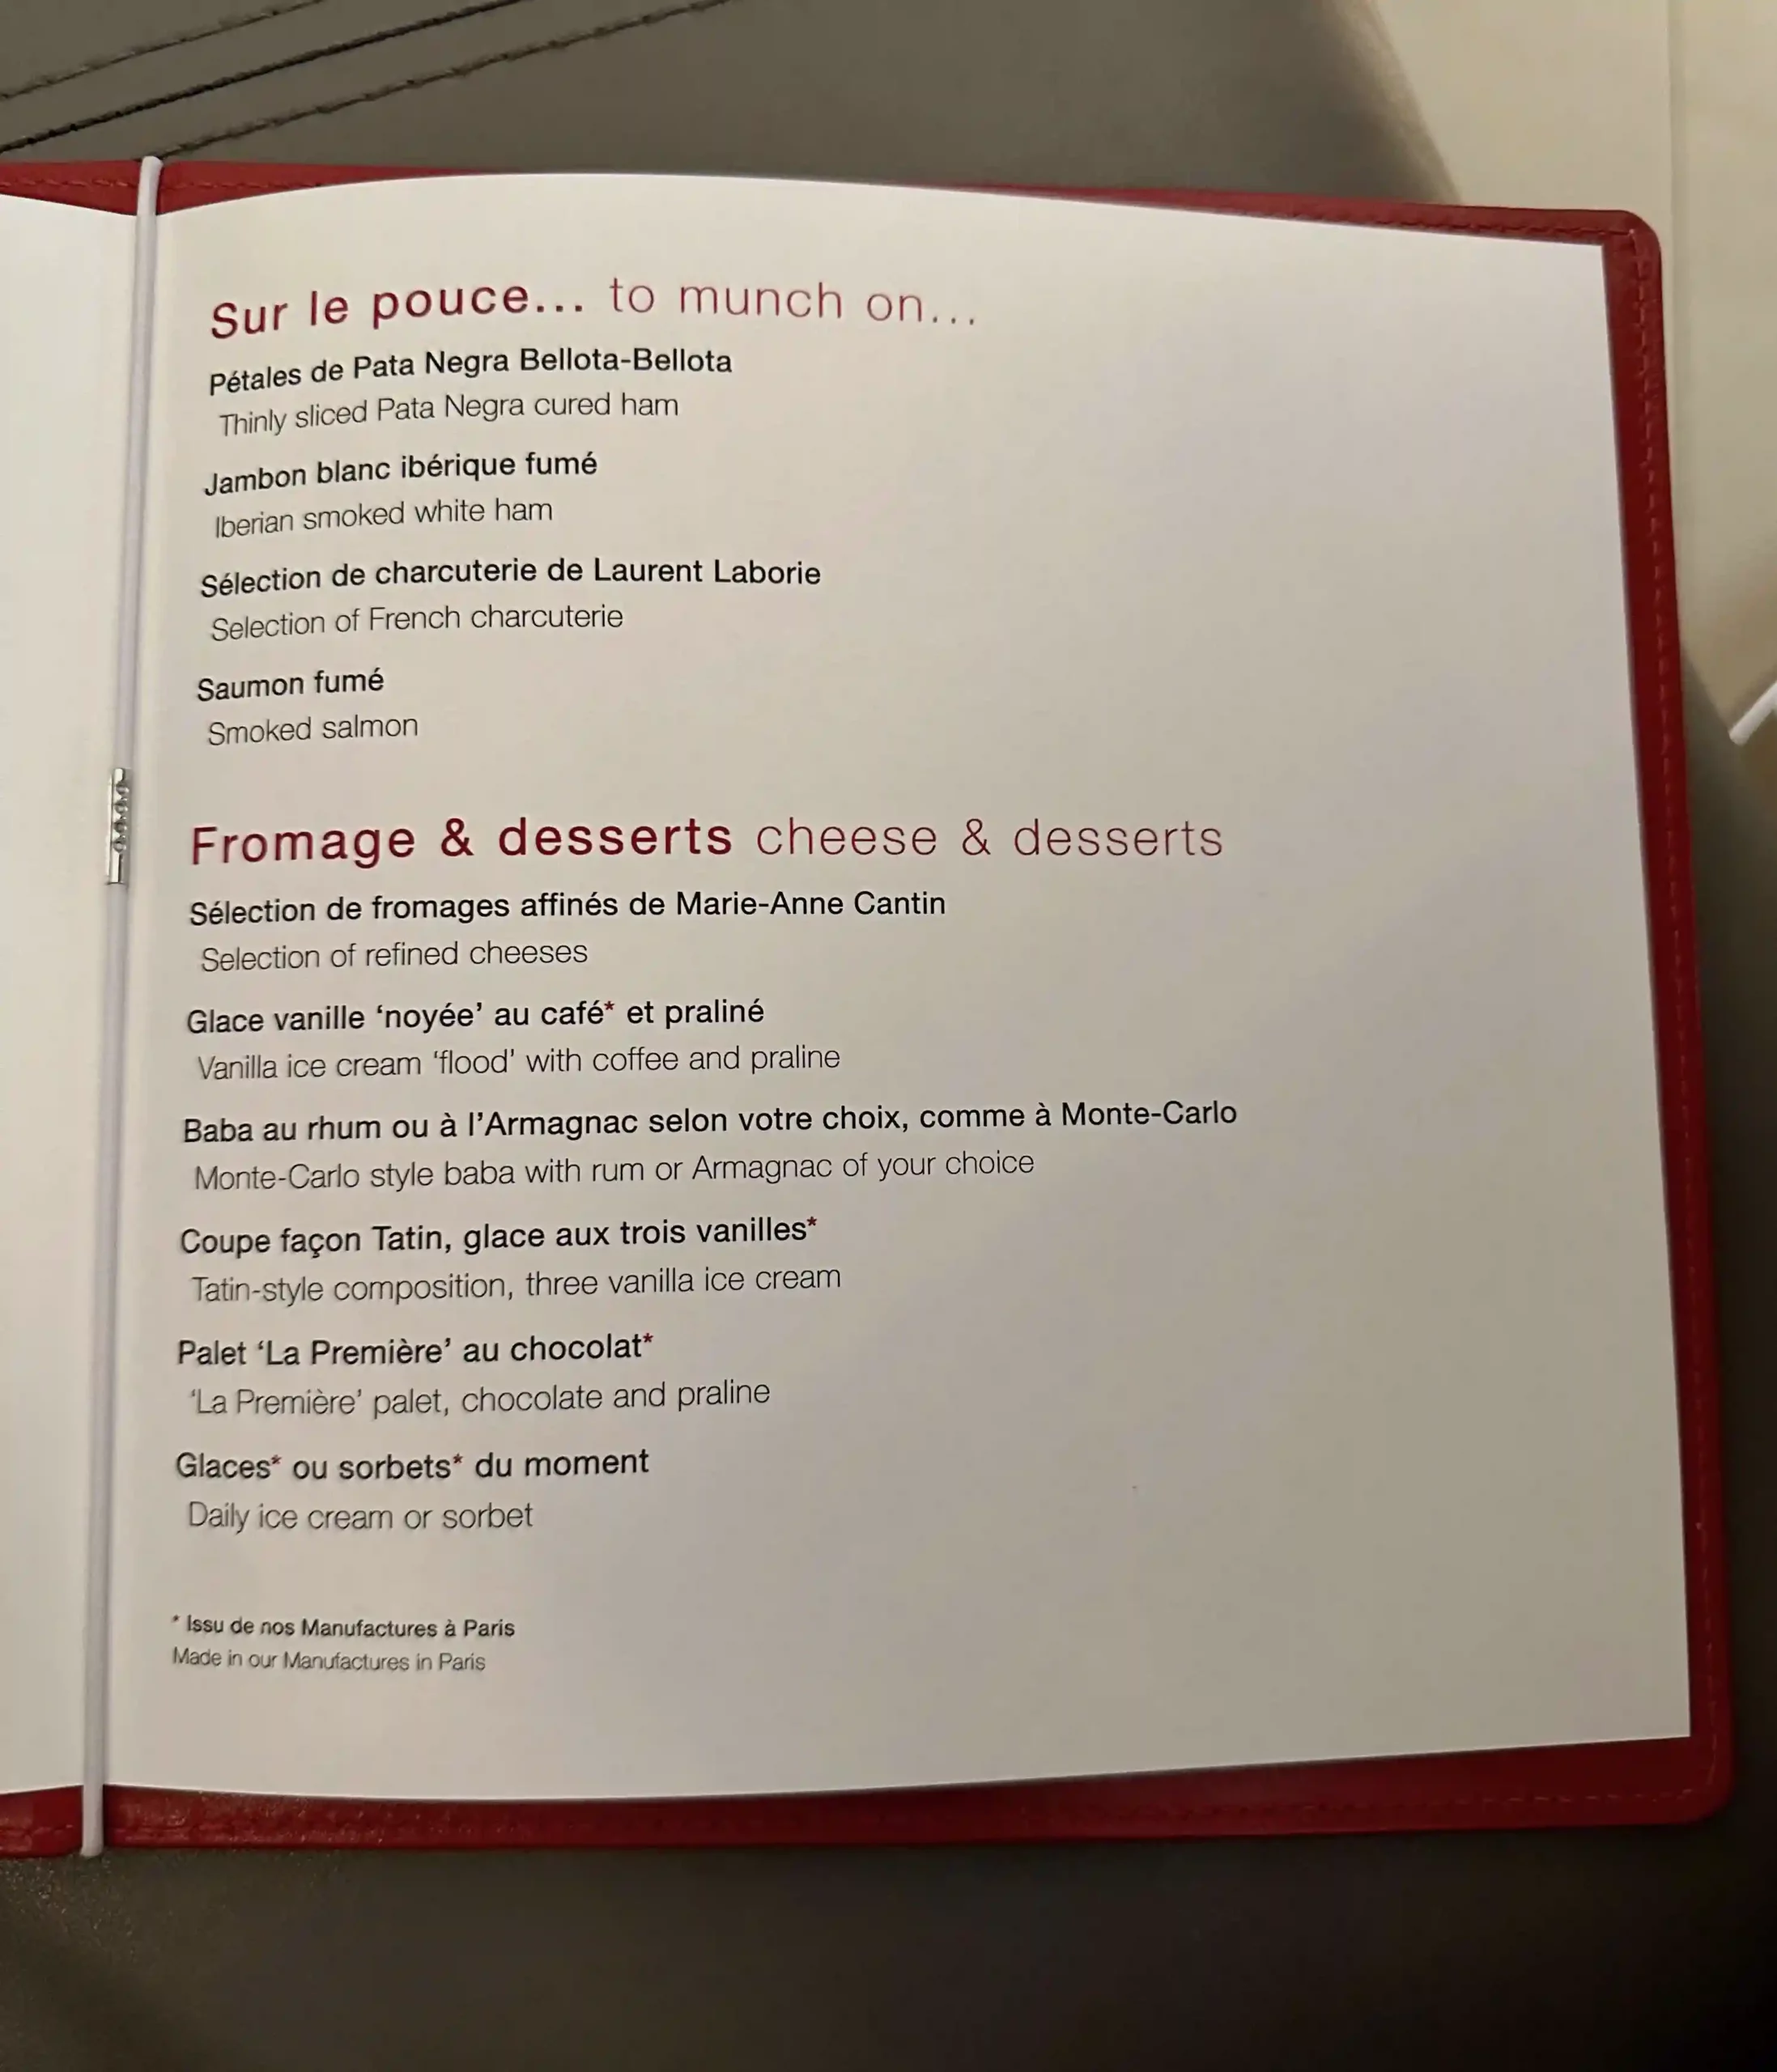 a menu in a red cover